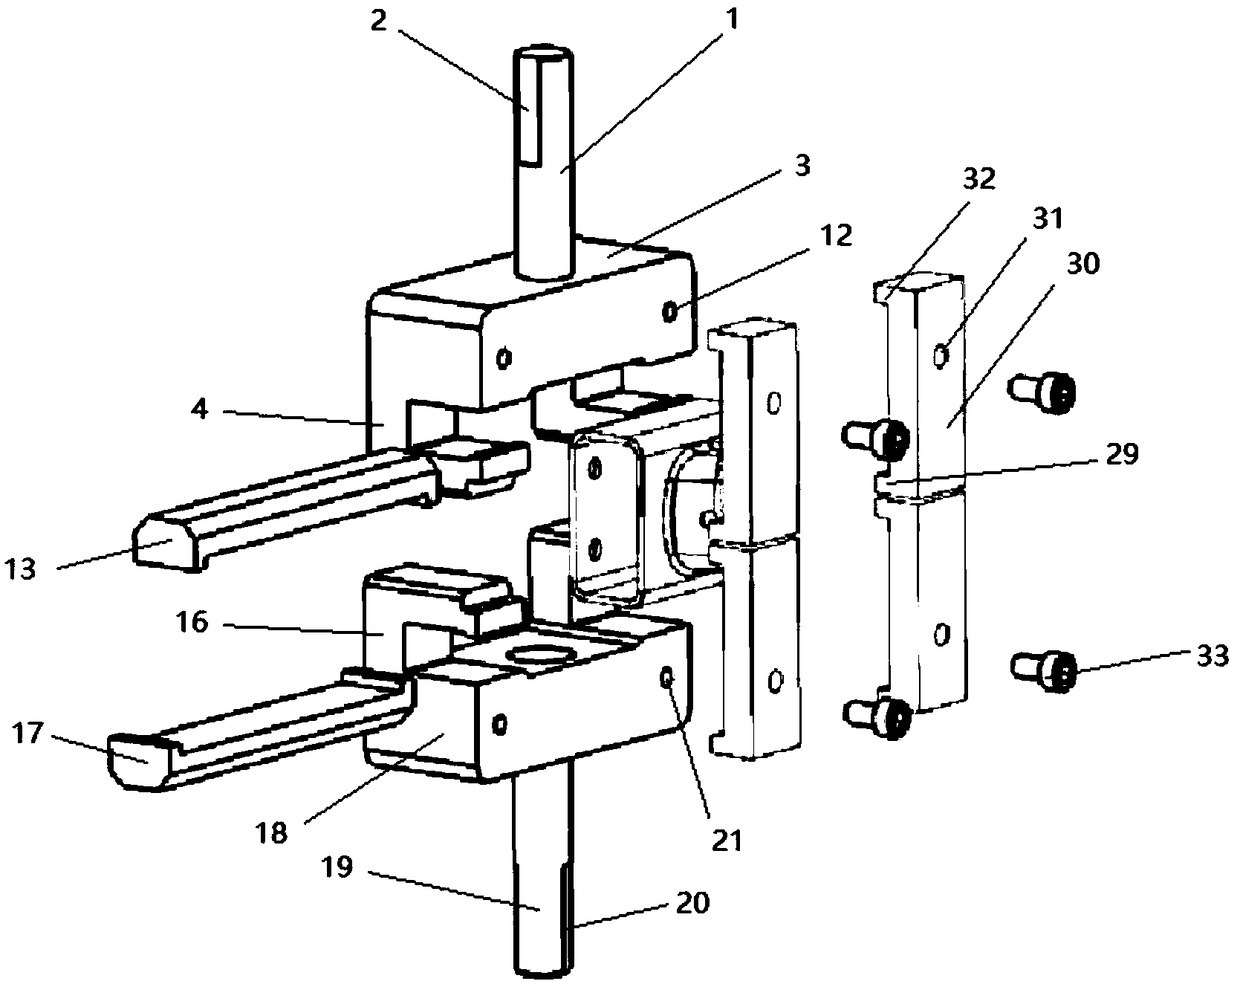 Drawing fixture of rectangular tubular workpiece